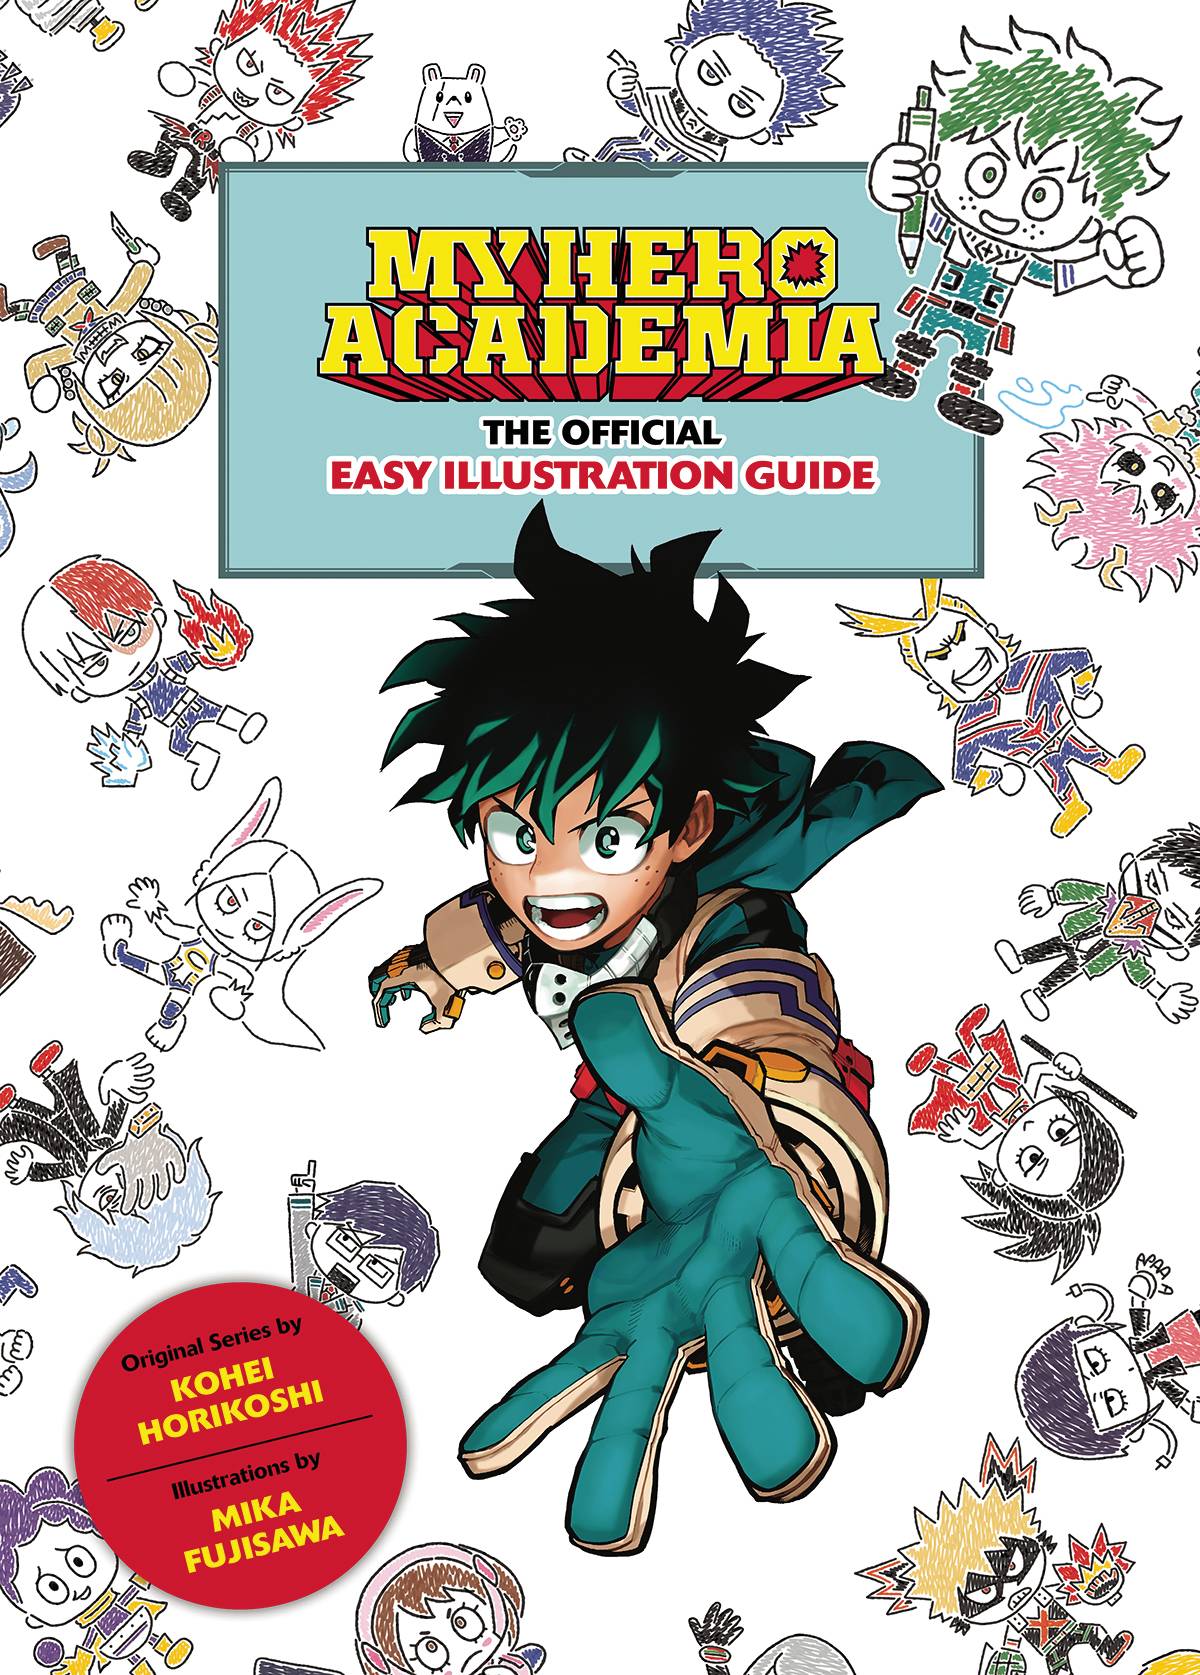 My Hero Academia, Vol. 1 (1) by Kohei Horikoshi